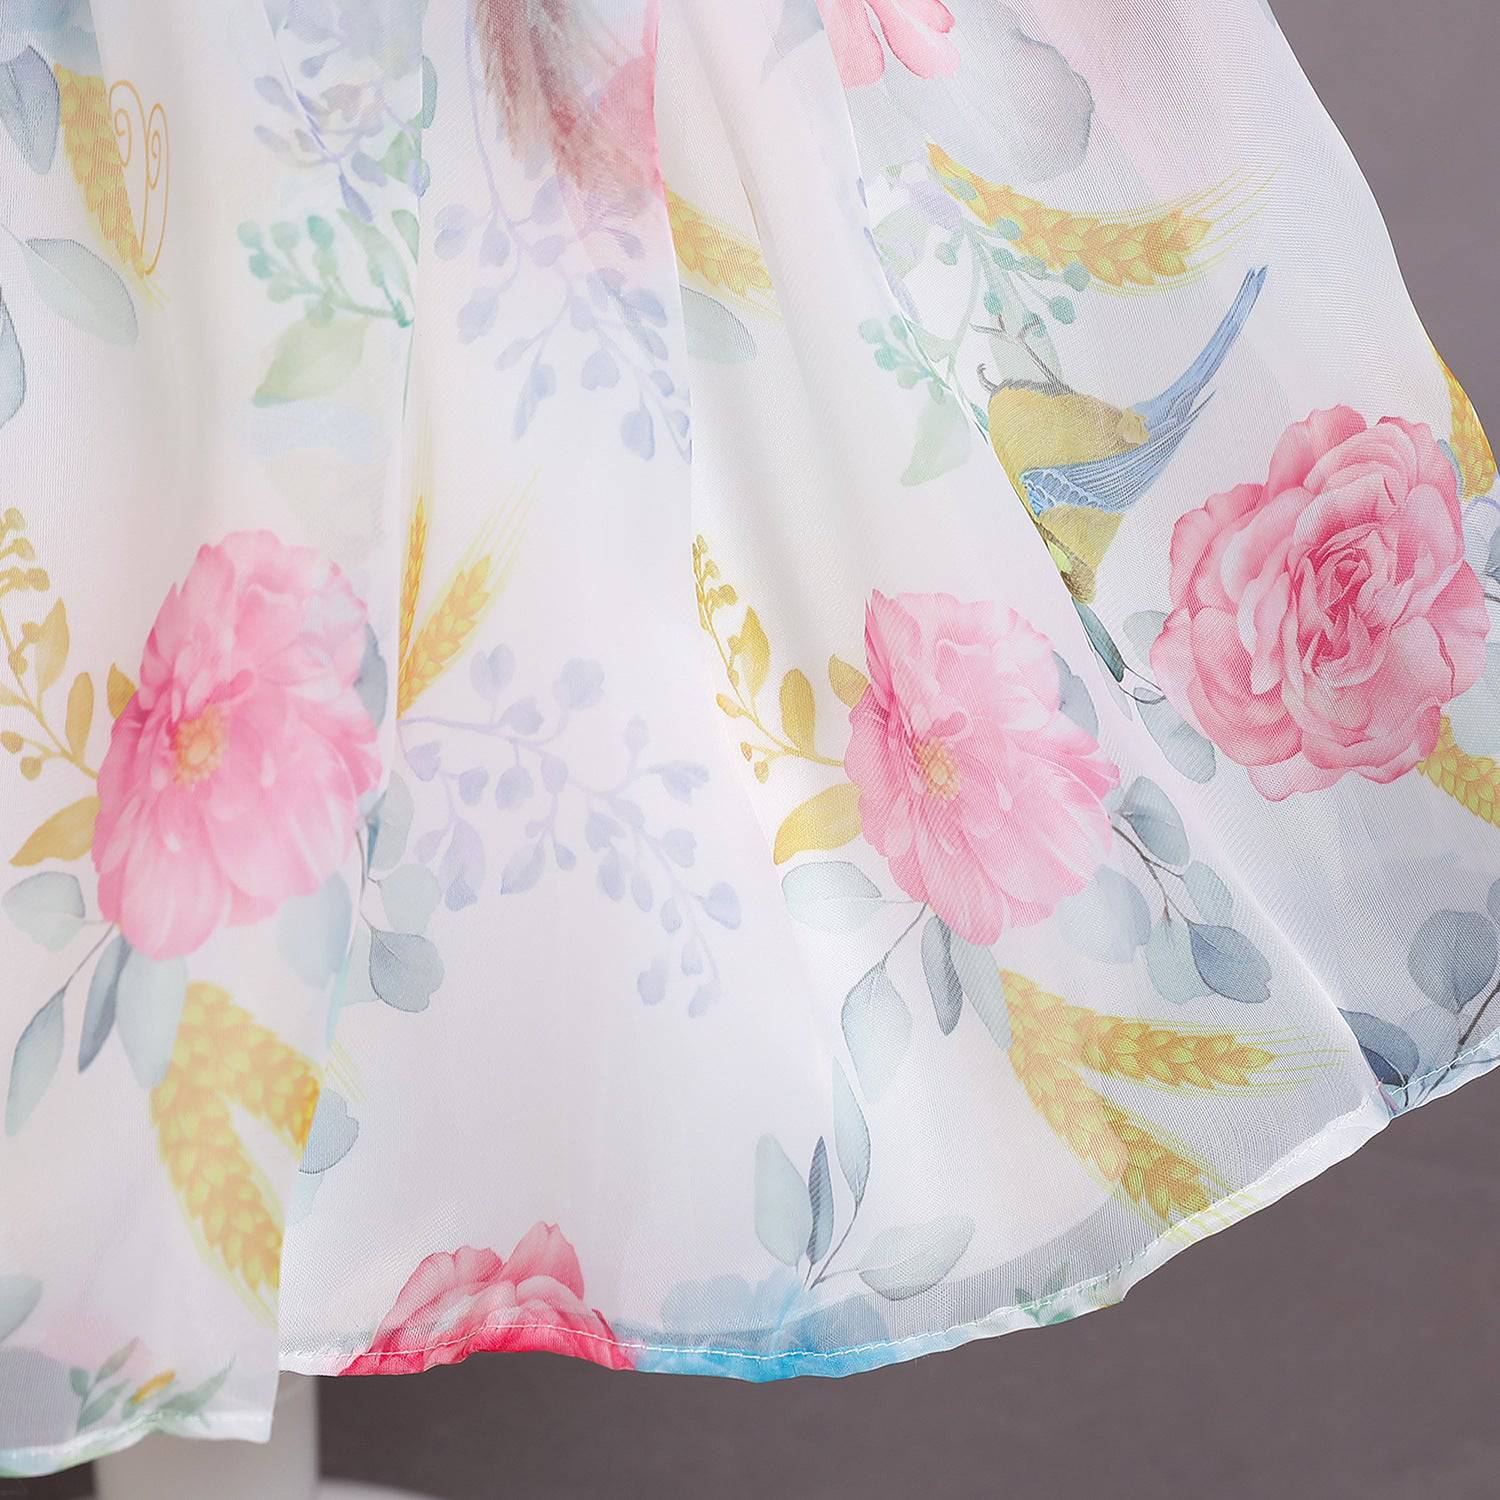 Floral Mesh Dress - LITTLE BEDOUIN